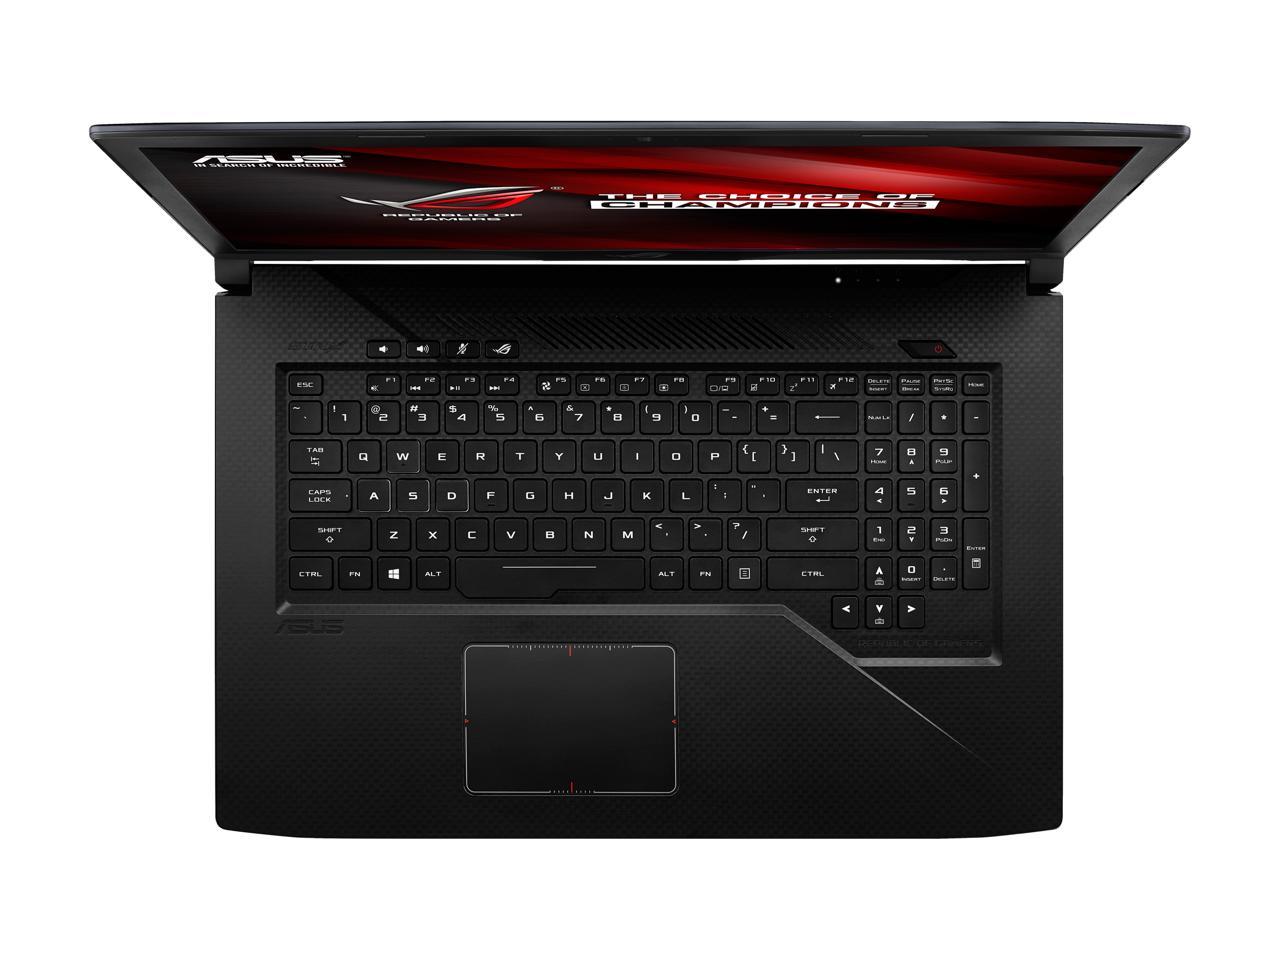 Asus Rog Strix Gl703vm Scar Edition Fps Gaming Laptop173” 120hz